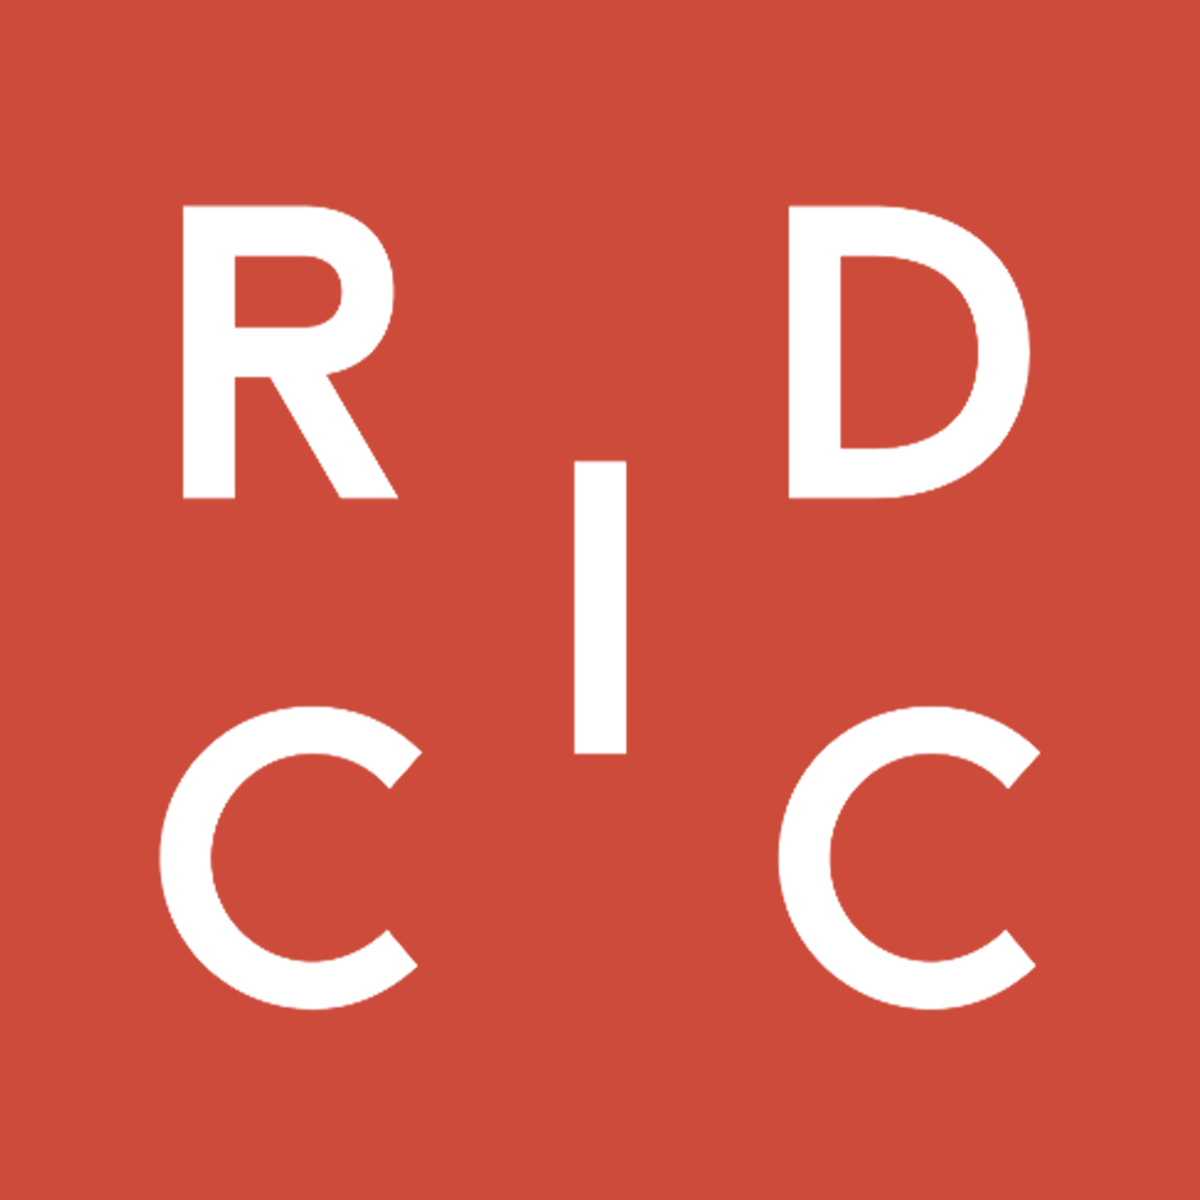 RIDCC